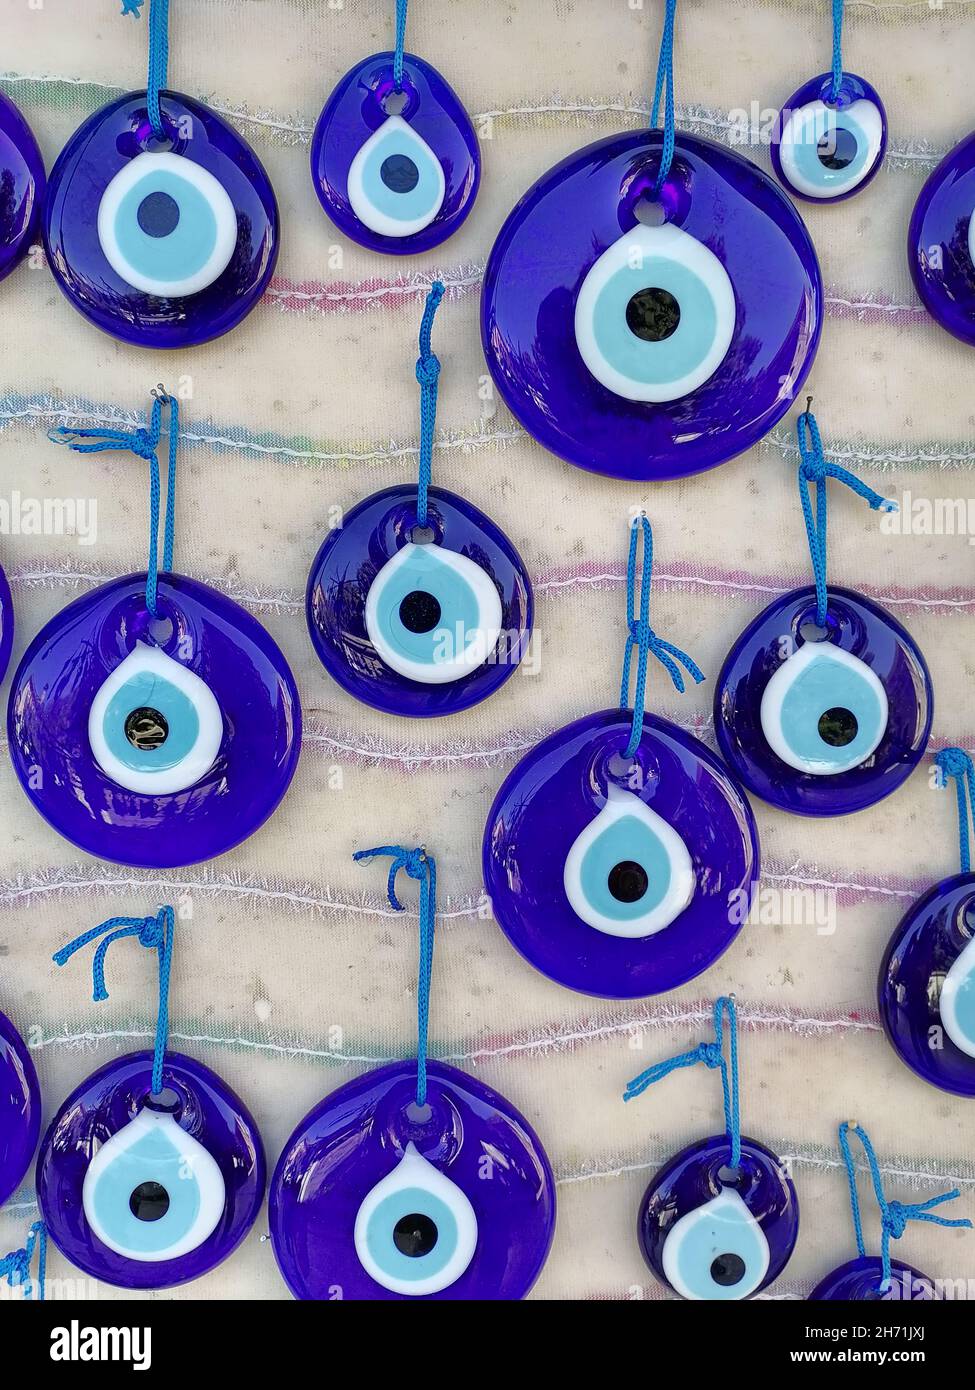 Türkisches böses Auge Perlen an der Wand. Stockfoto